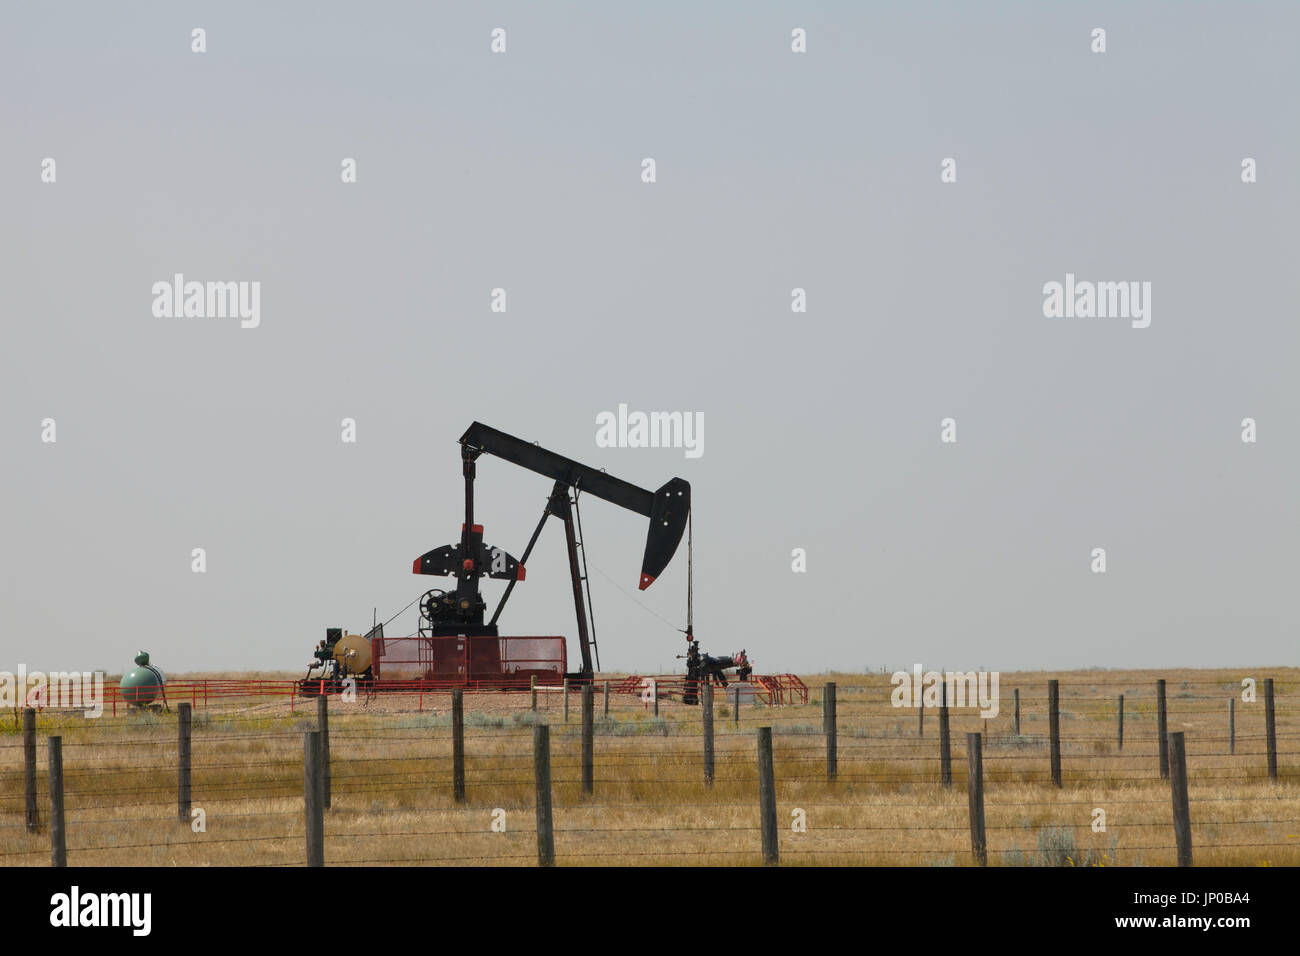 Plate-forme pétrolière en Alberta, Canada sur le terrain. Pompe à huile dans la prairie. Banque D'Images